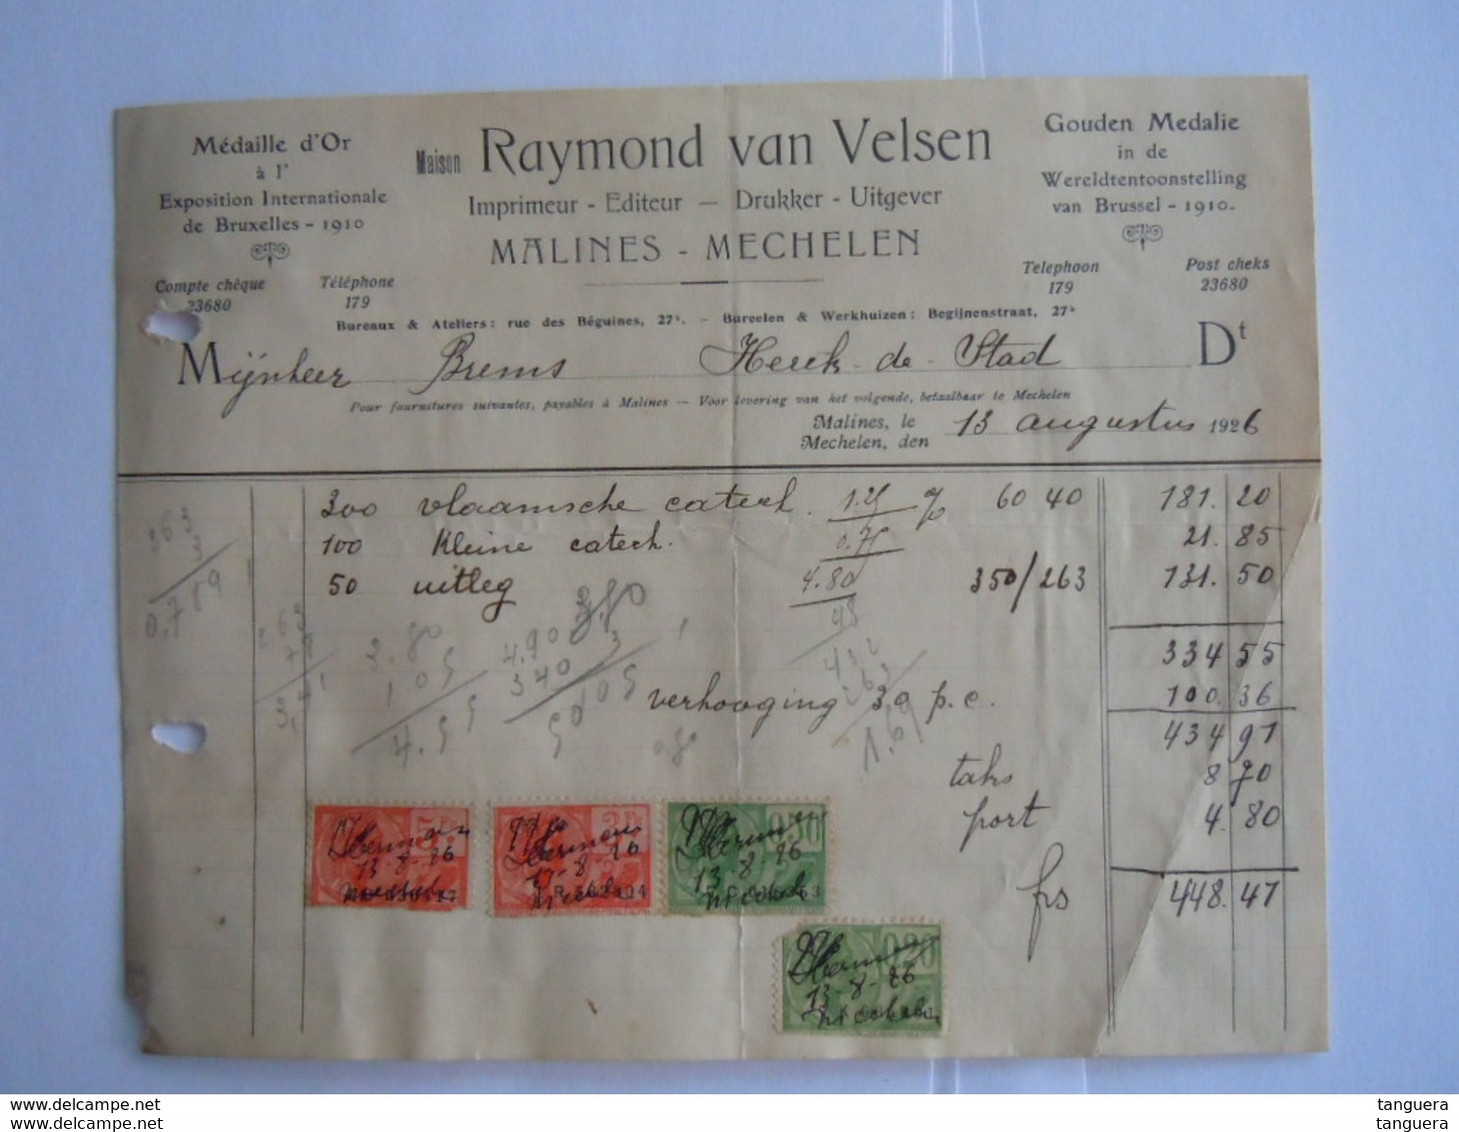 1926 Raymond Van Velsen Drukker Uitgever Imprimeur Mechelen Malines Facture Factuur Brems Herck-de -stad Taxe  8,70 Fr - Drukkerij & Papieren